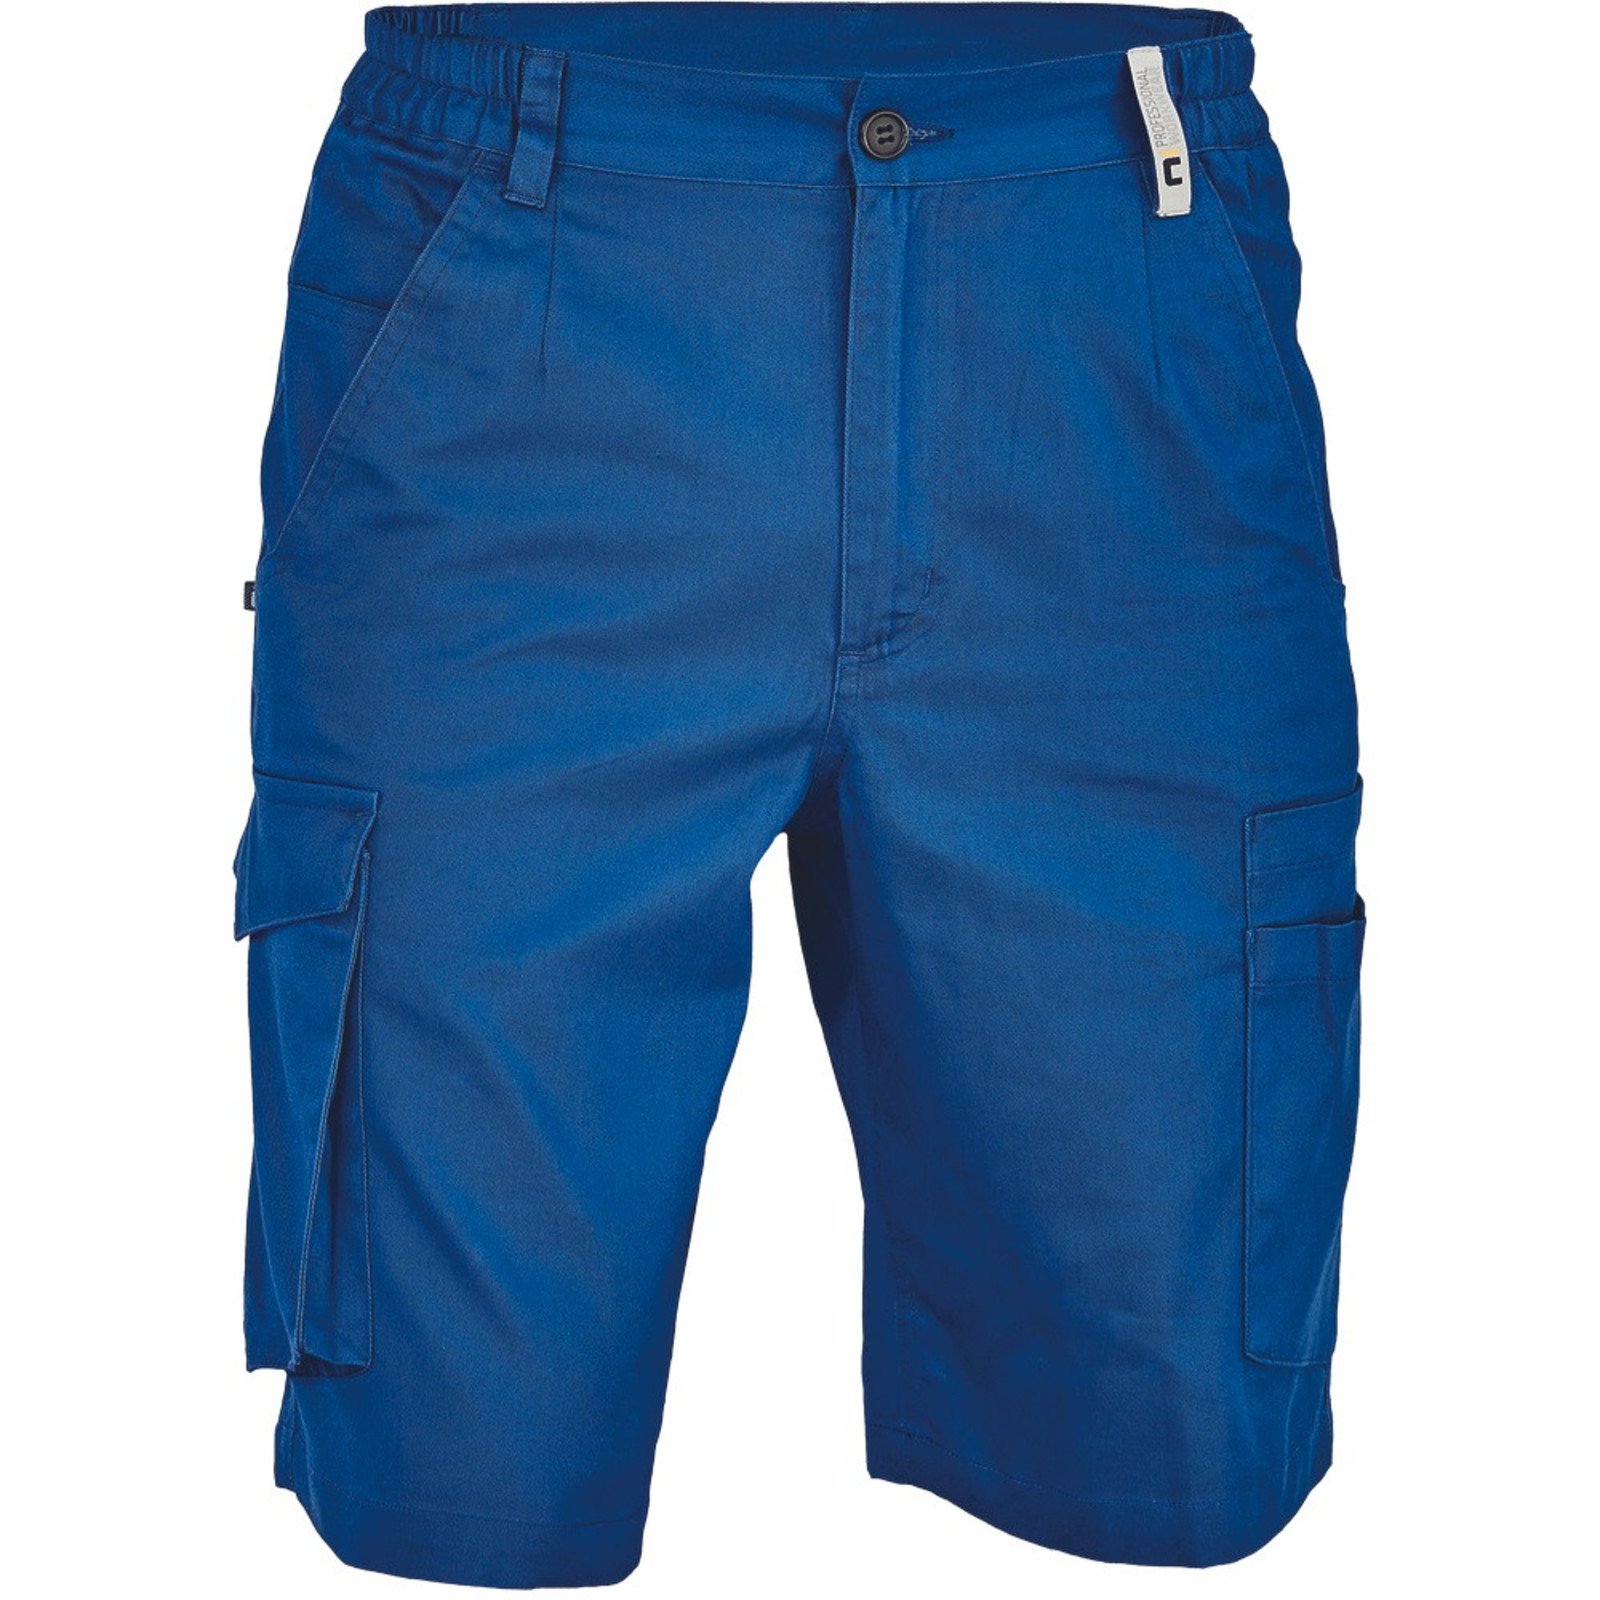 Pánske pracovné šortky Cerva Ciudades Basic Gijon - veľkosť: 58, farba: royal blue